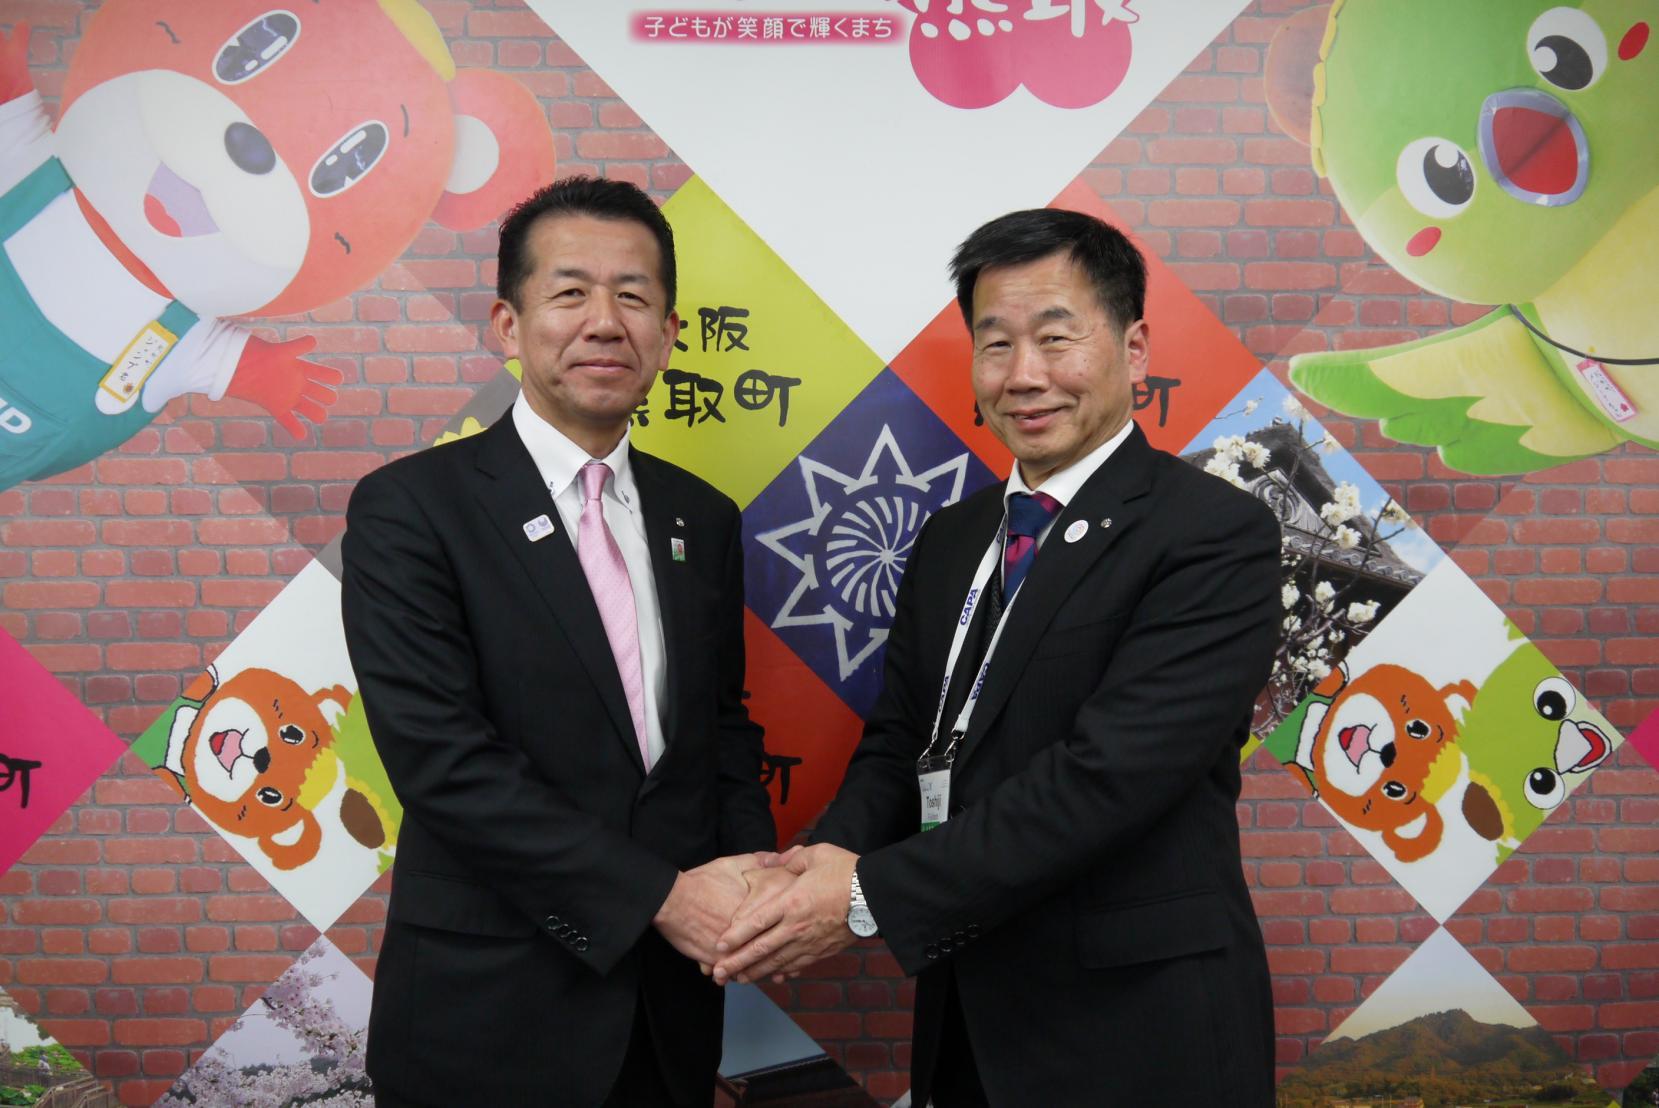 藤原町長と山田村長が笑顔で握手している写真